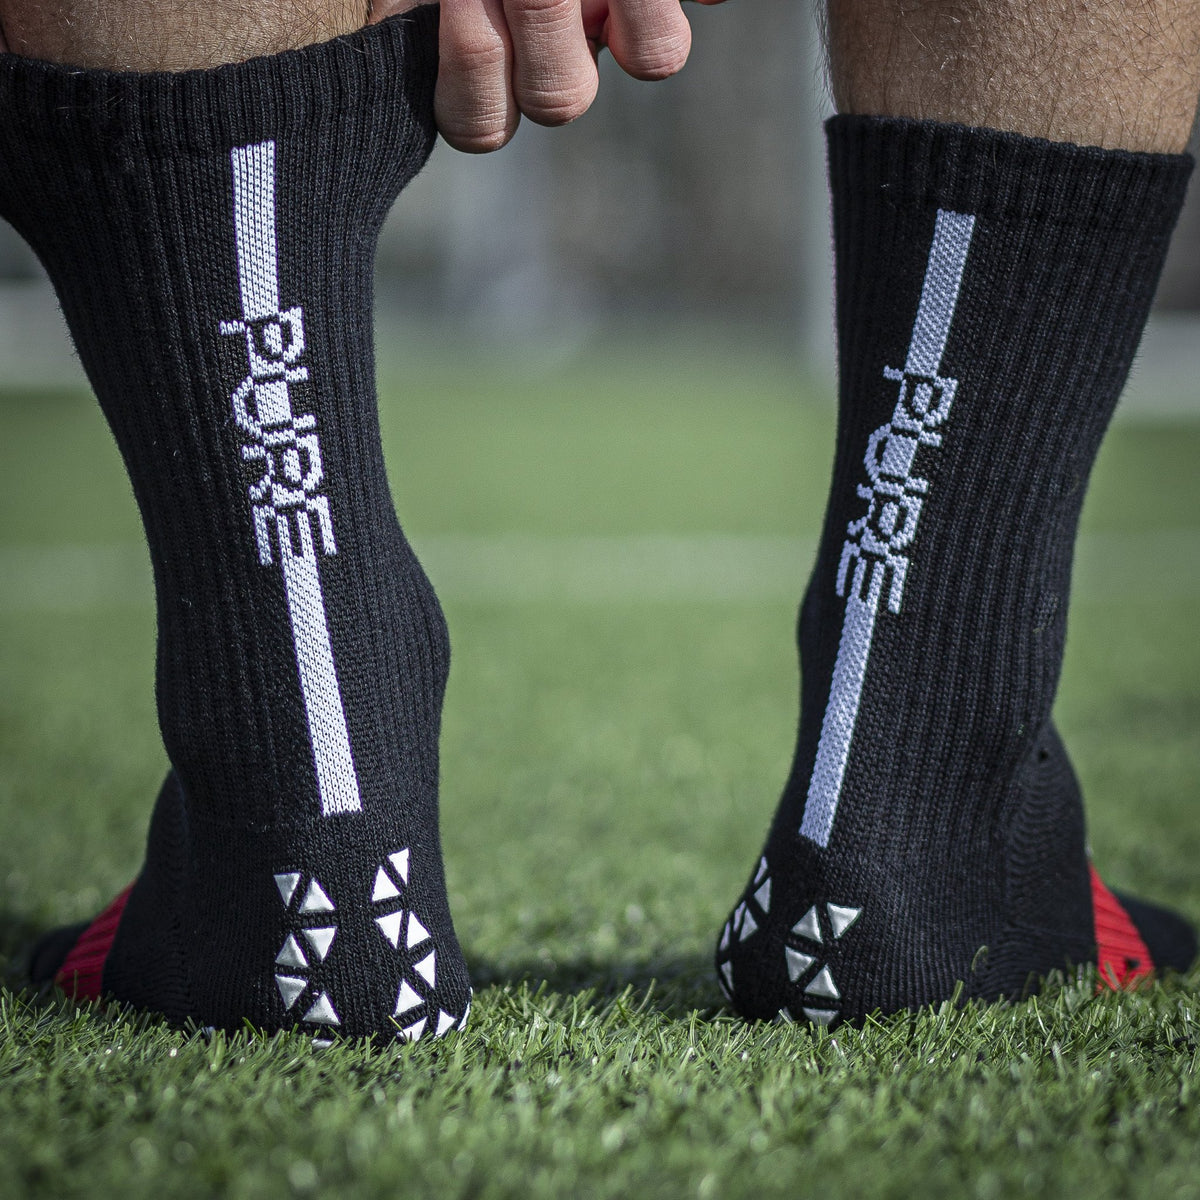 Pure Grip Socks Pro | SR4U | GRIP SOCCER SOCKS - Niky's Sports